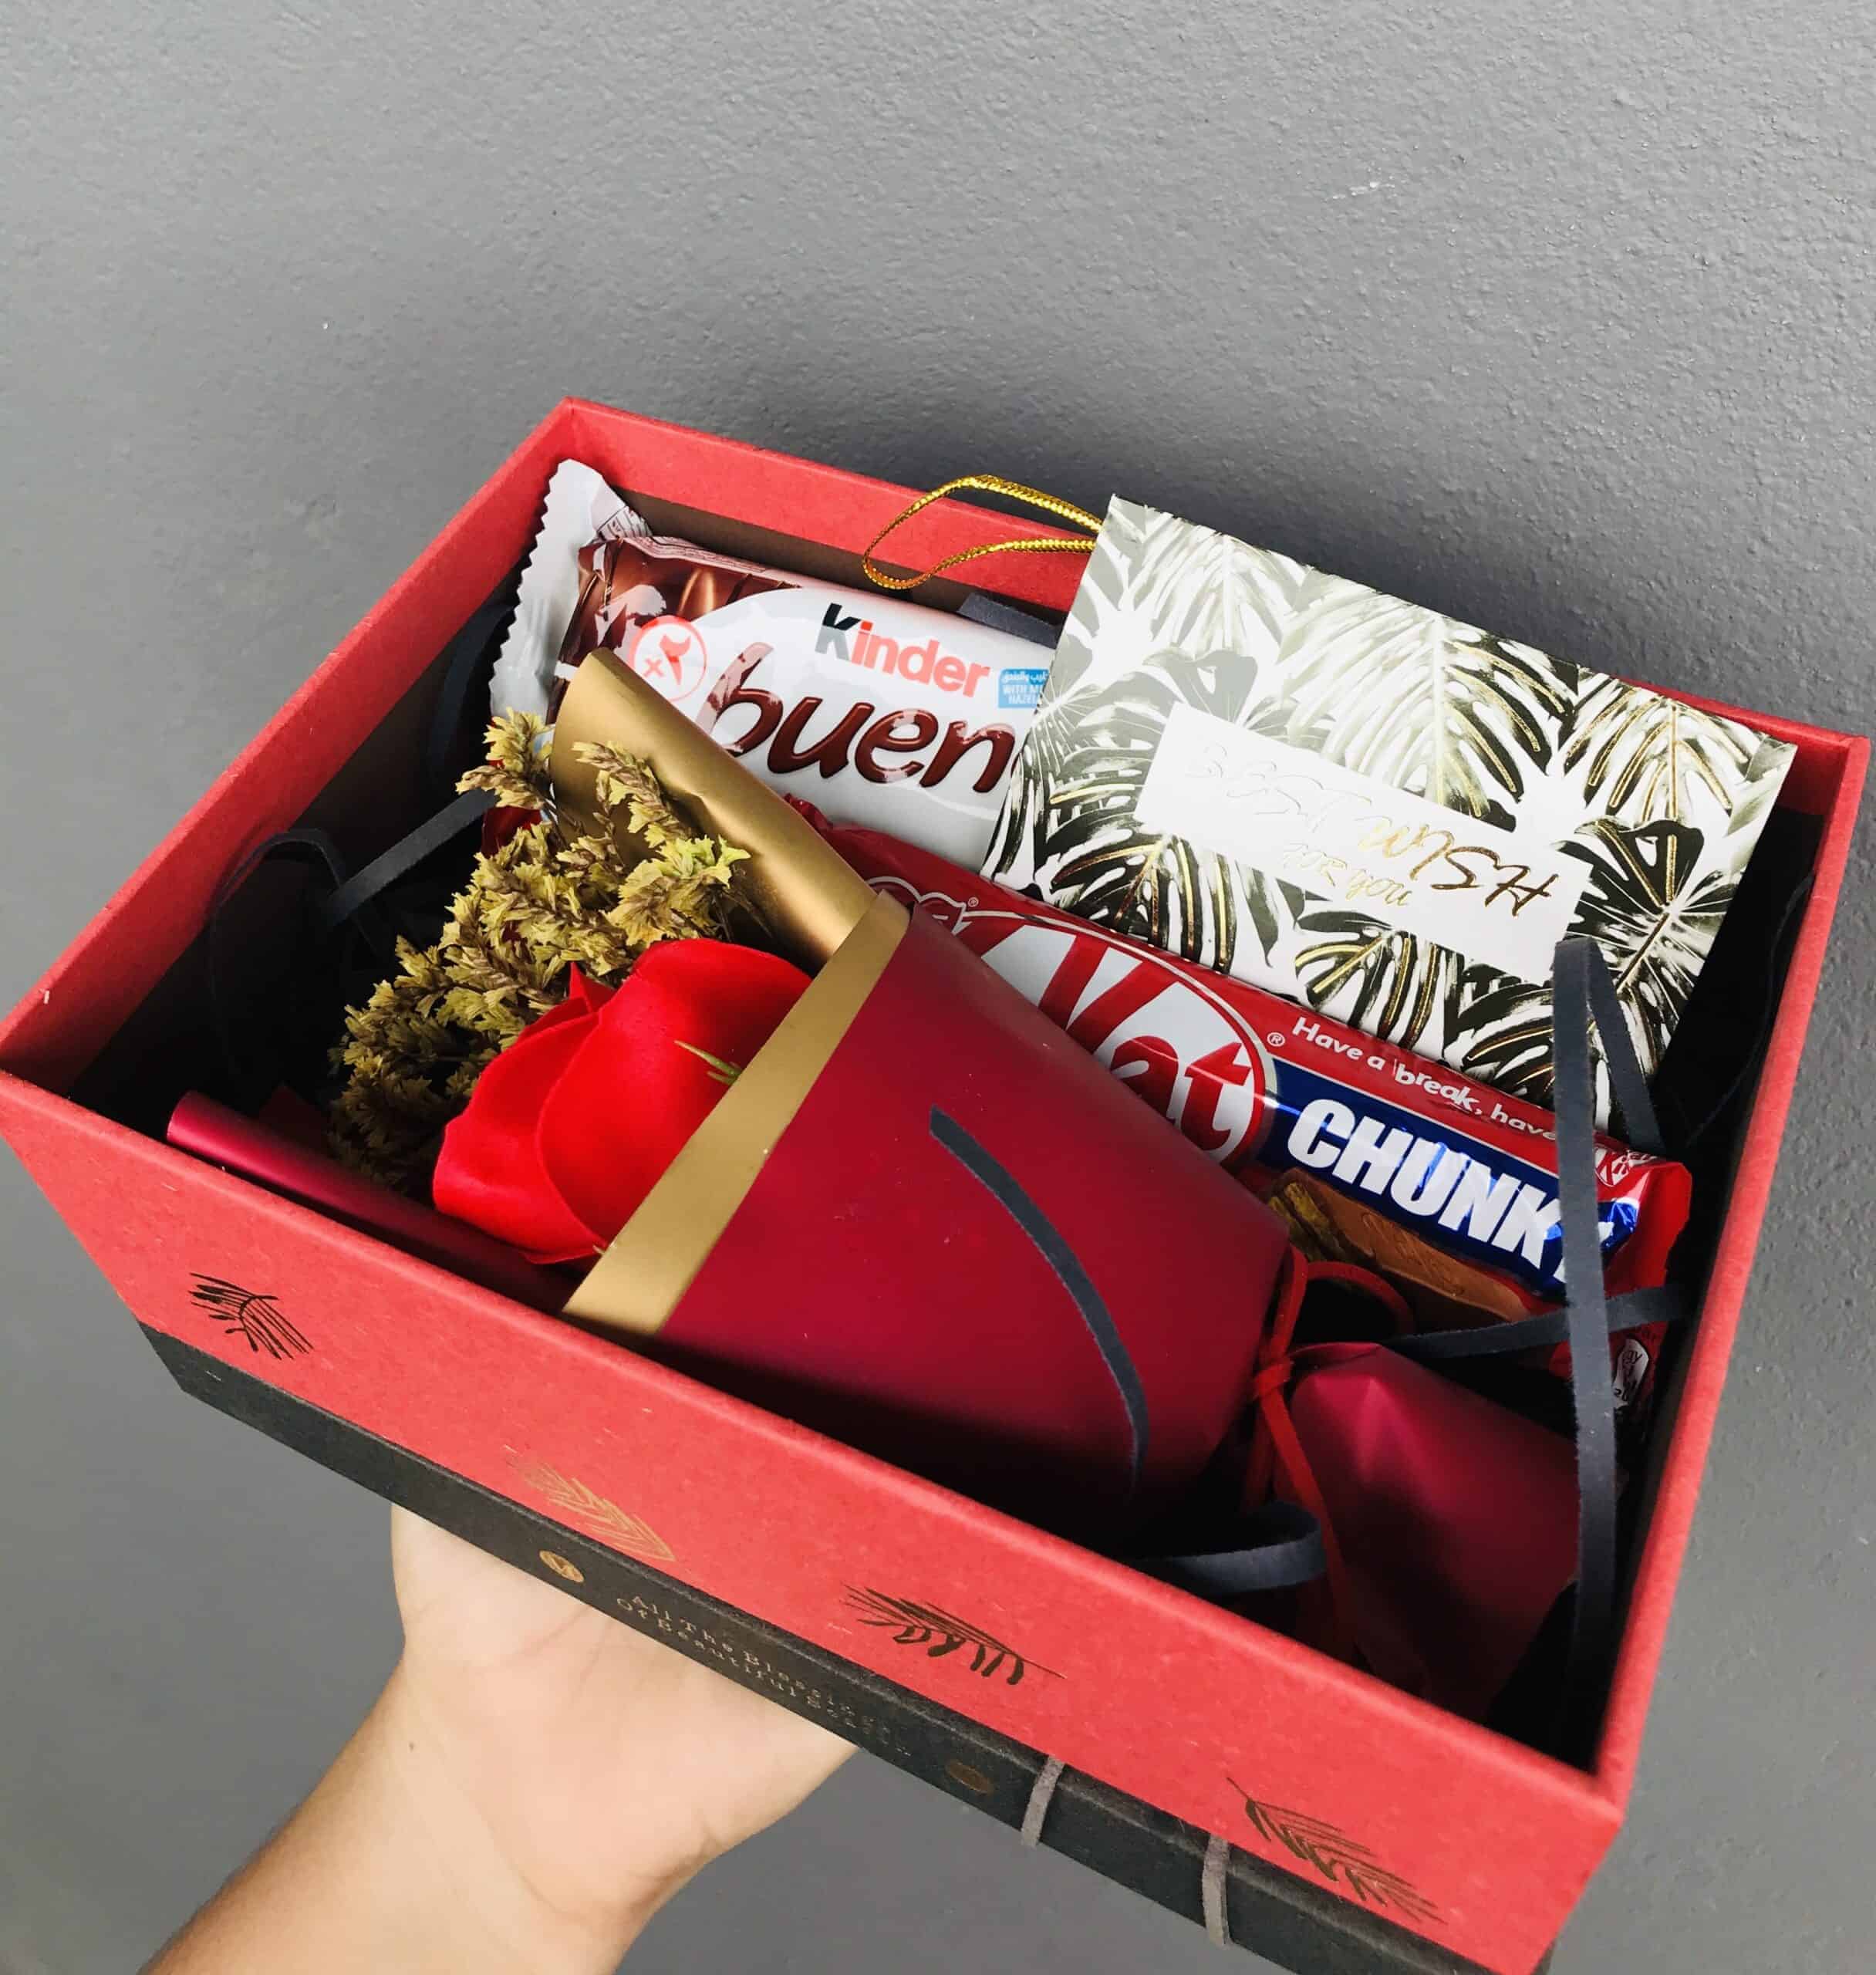 Chocolate Gift Box For Him/ Her Birthday/ Anniversary ...